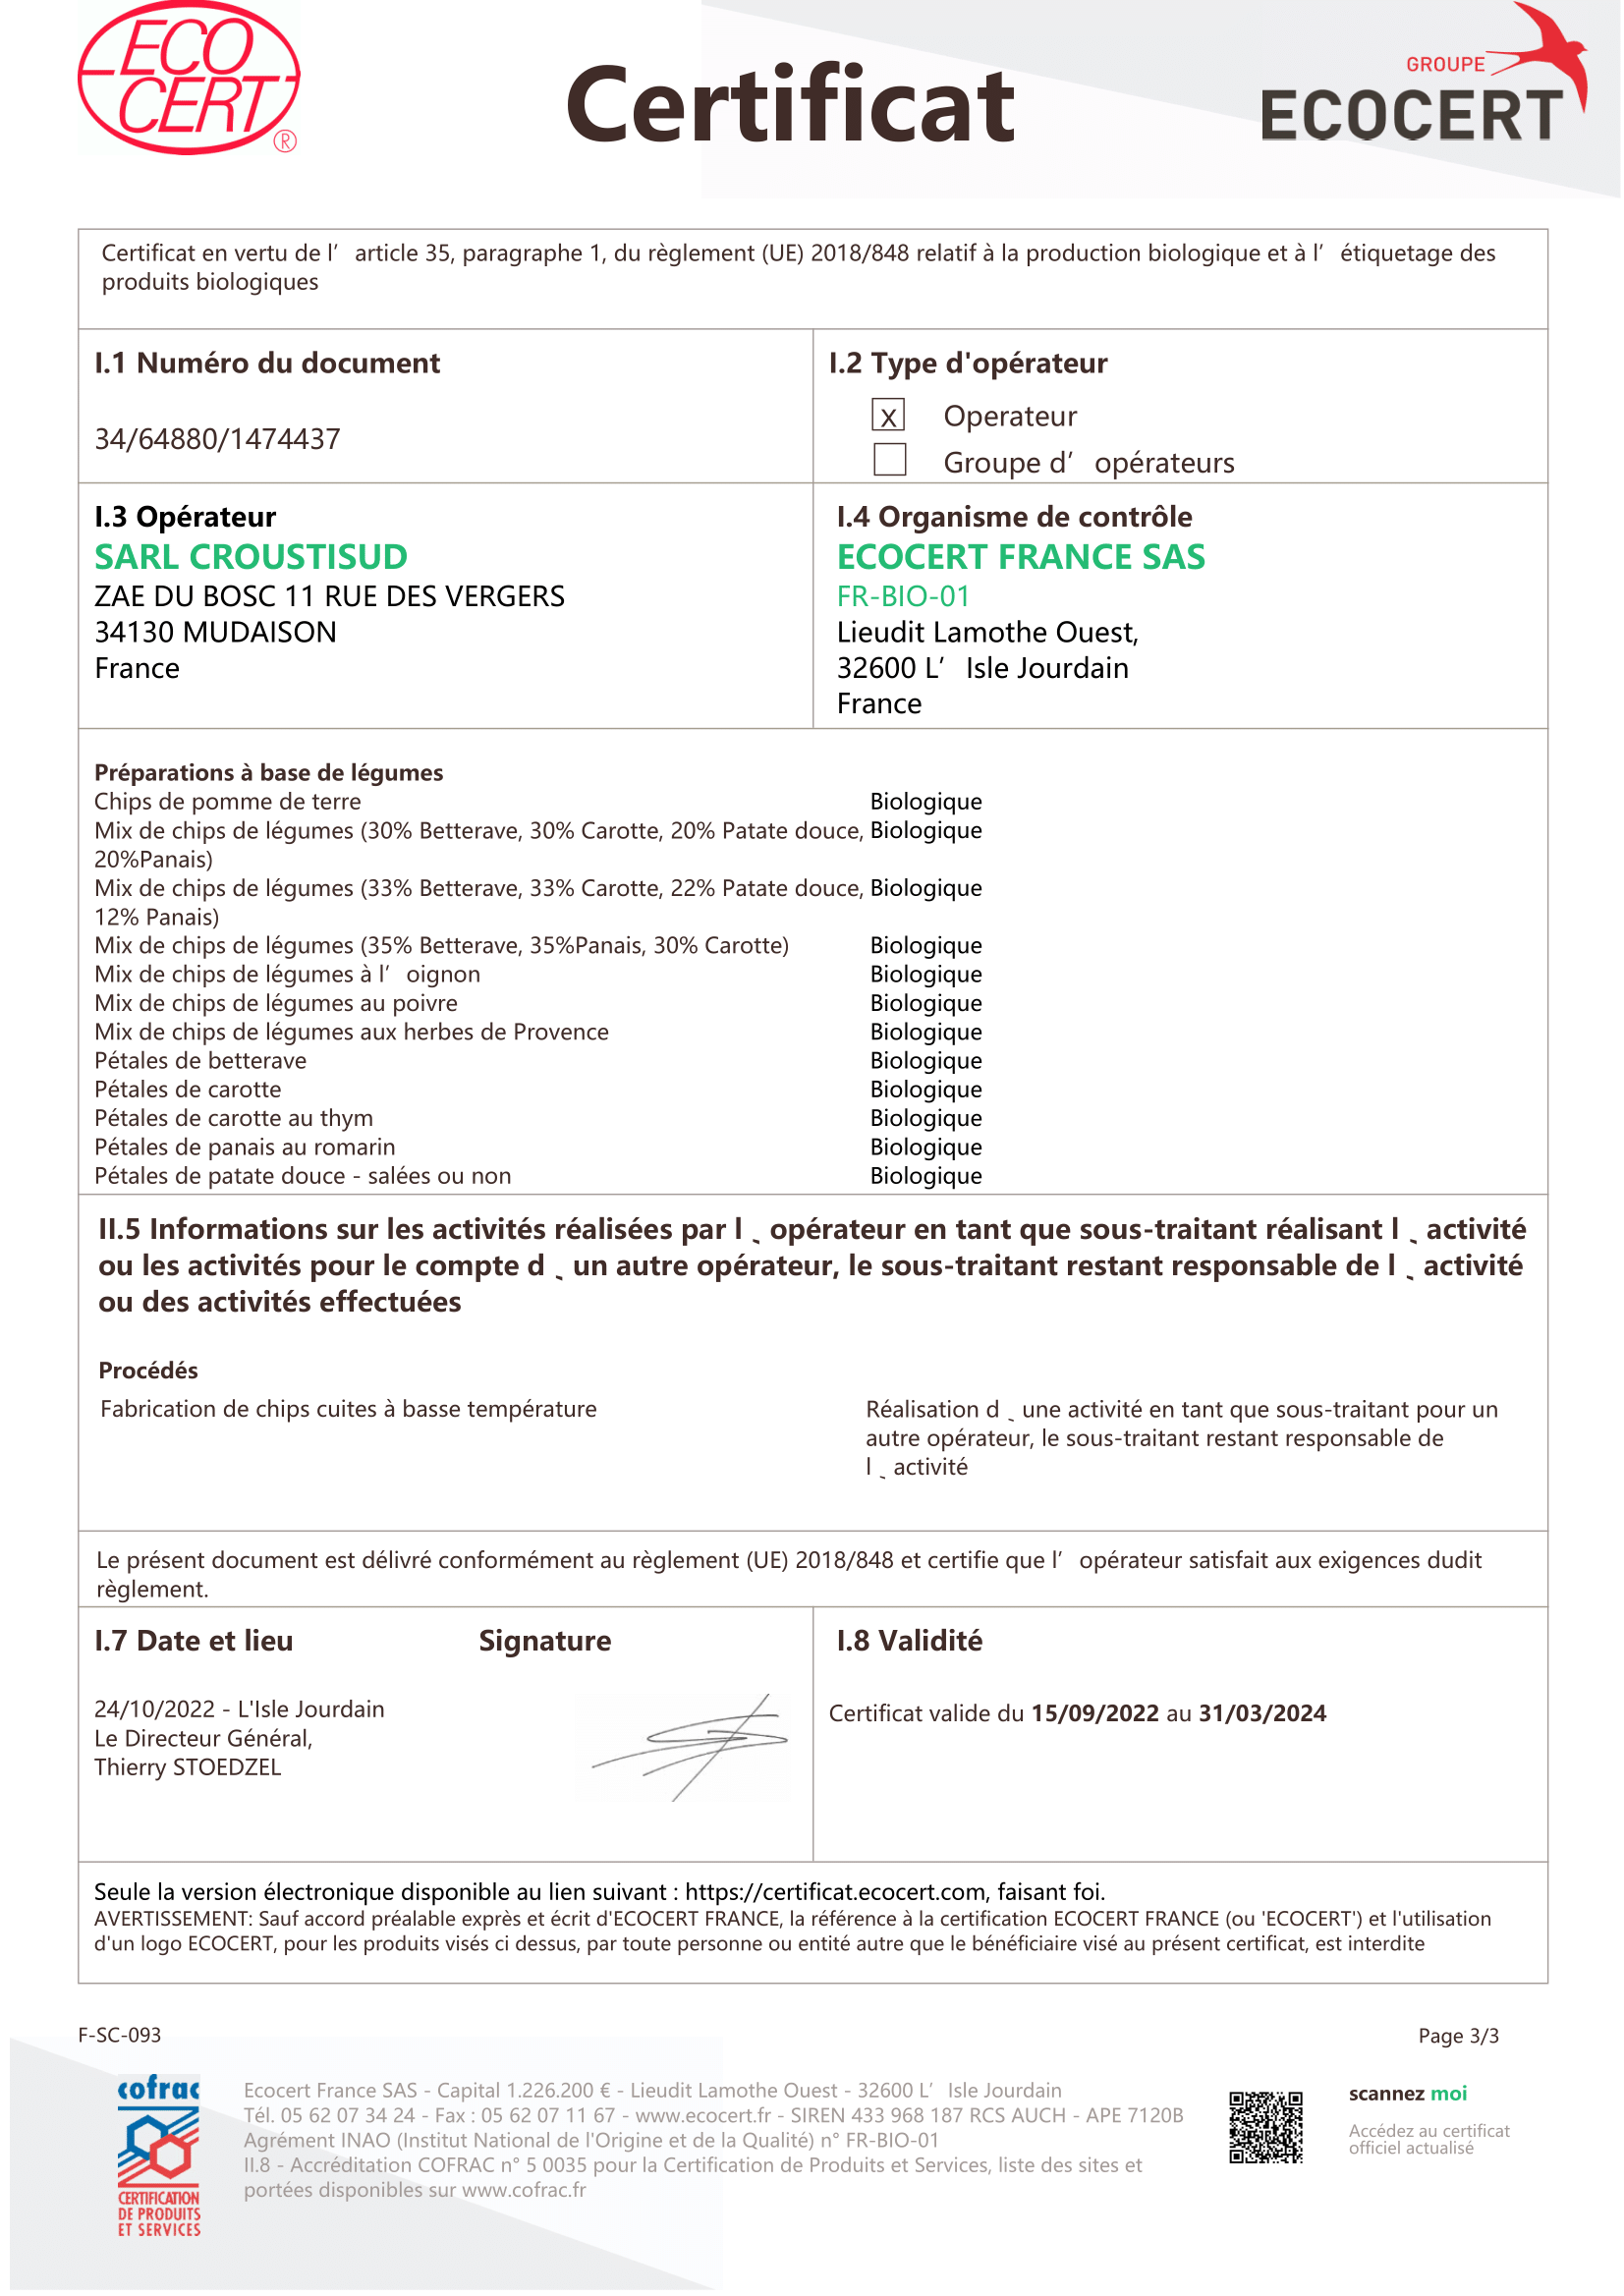 Certificat_EU_2018_848-1-3